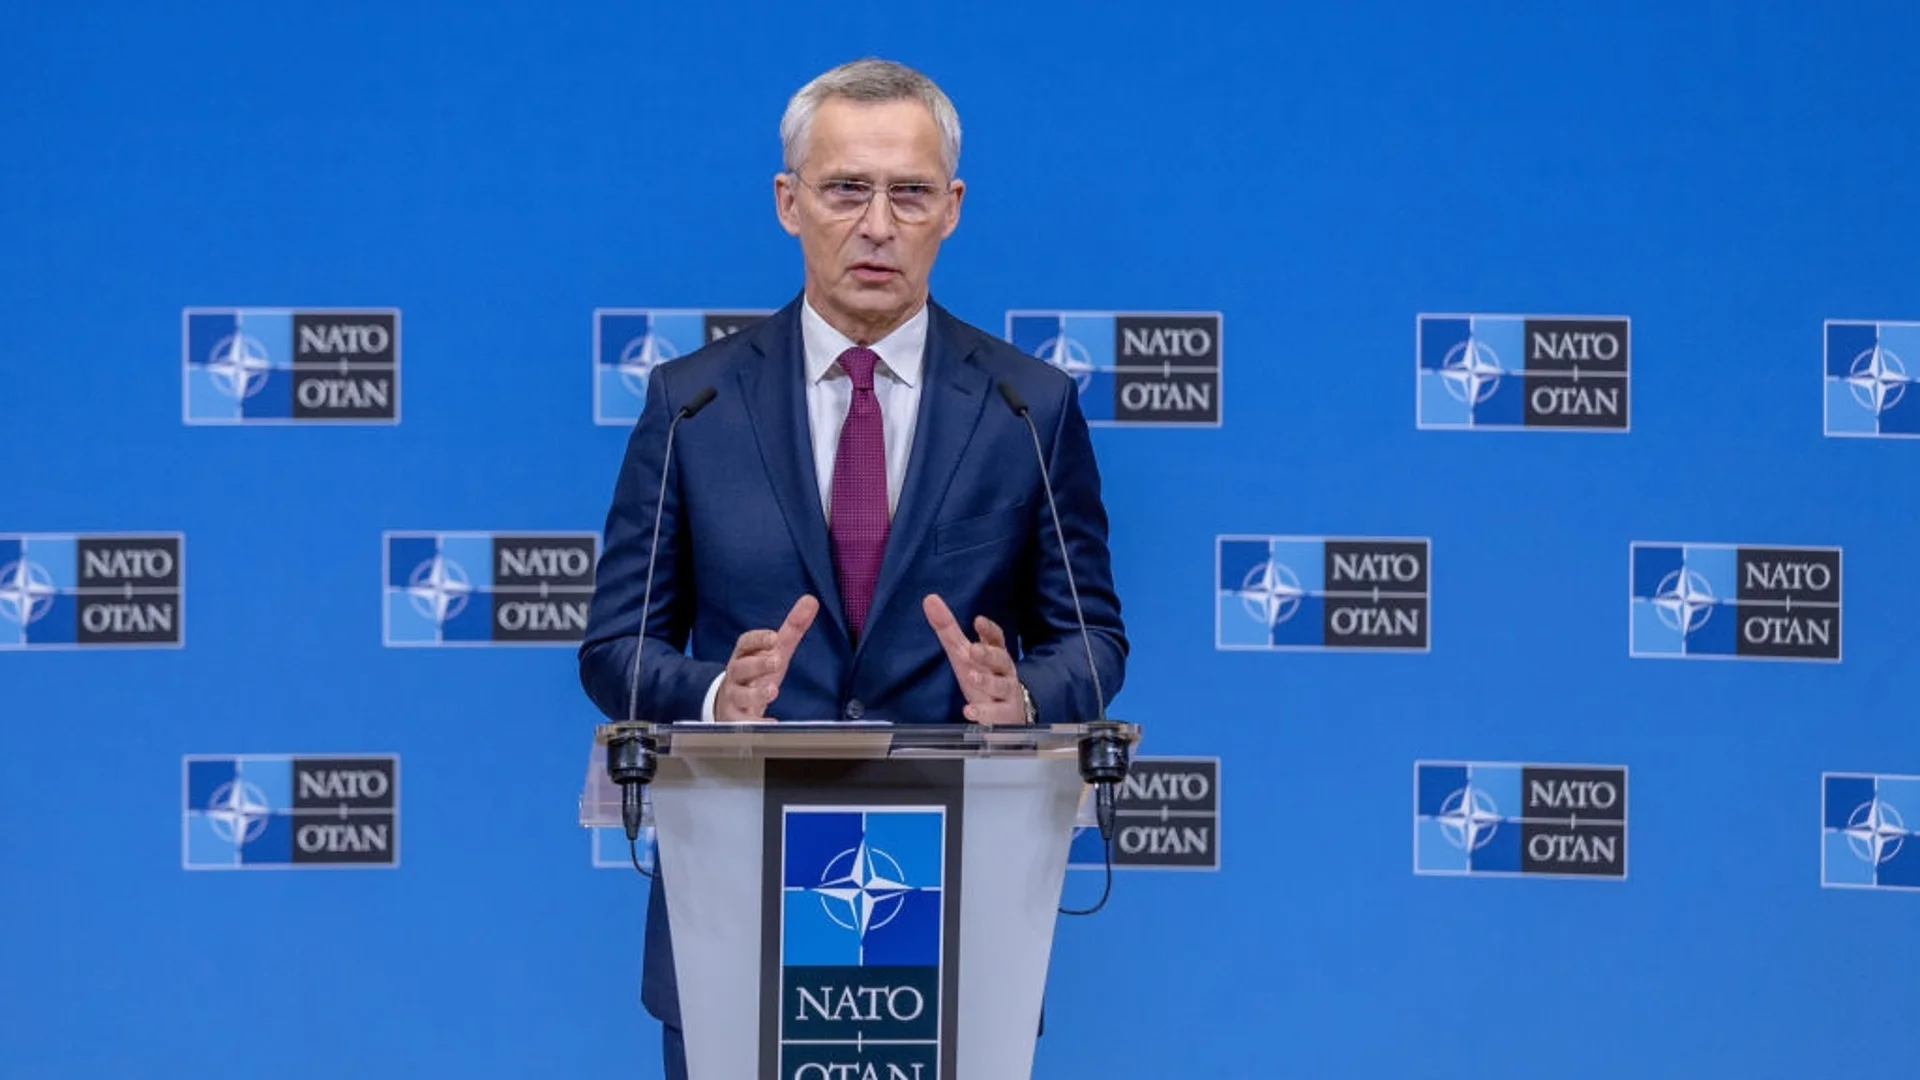 Западните Балкани са от стратегическо значение за НАТО: Йенс Столтенберг